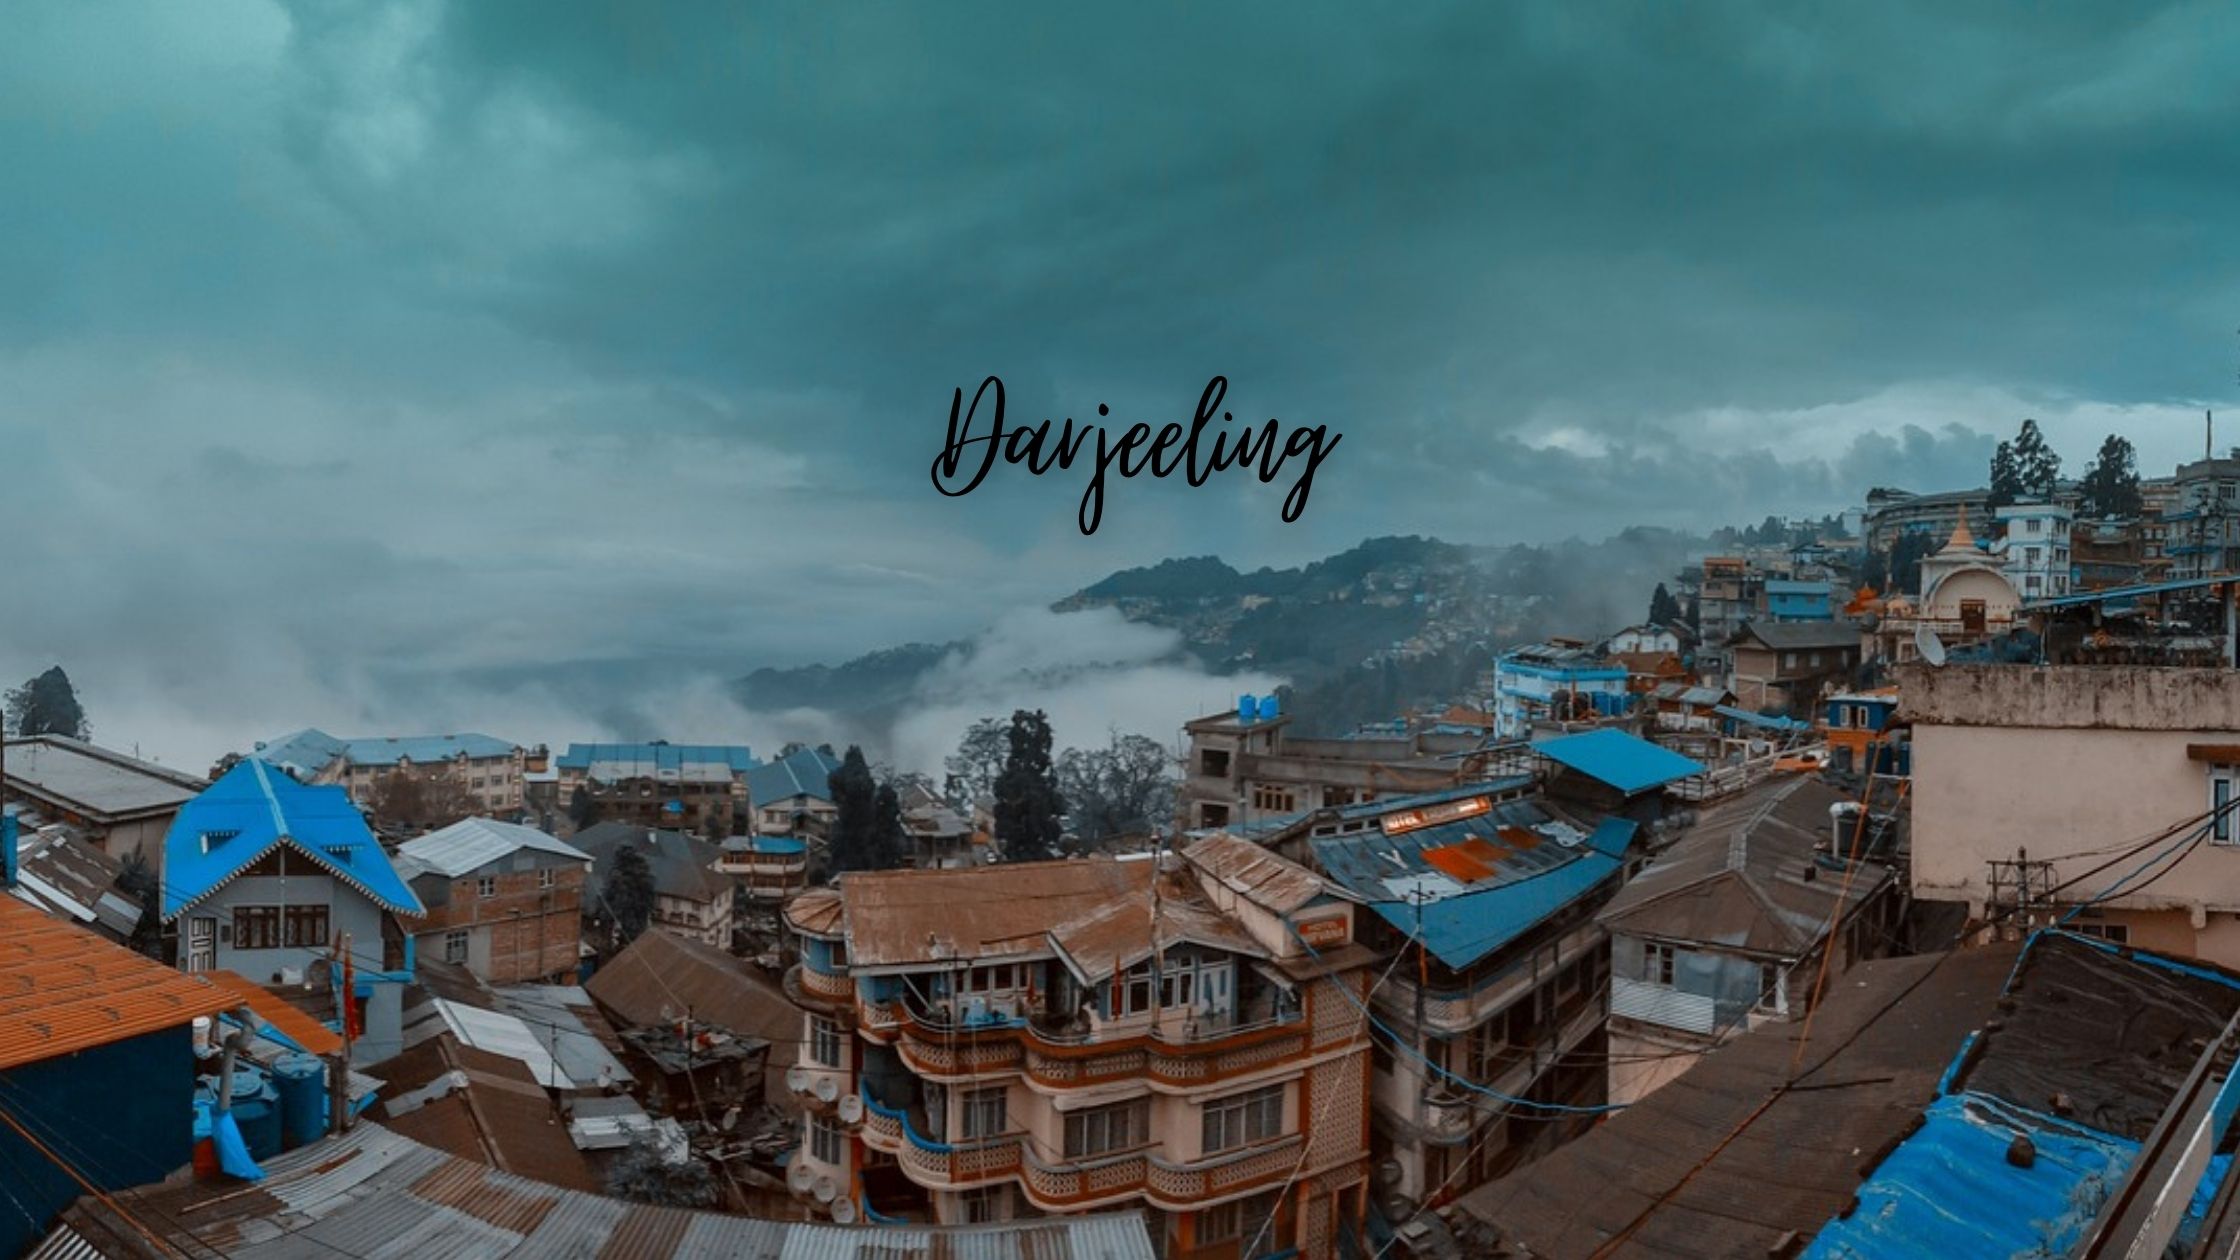 Darjeeling - Snowy Honeymoon Destinations in India